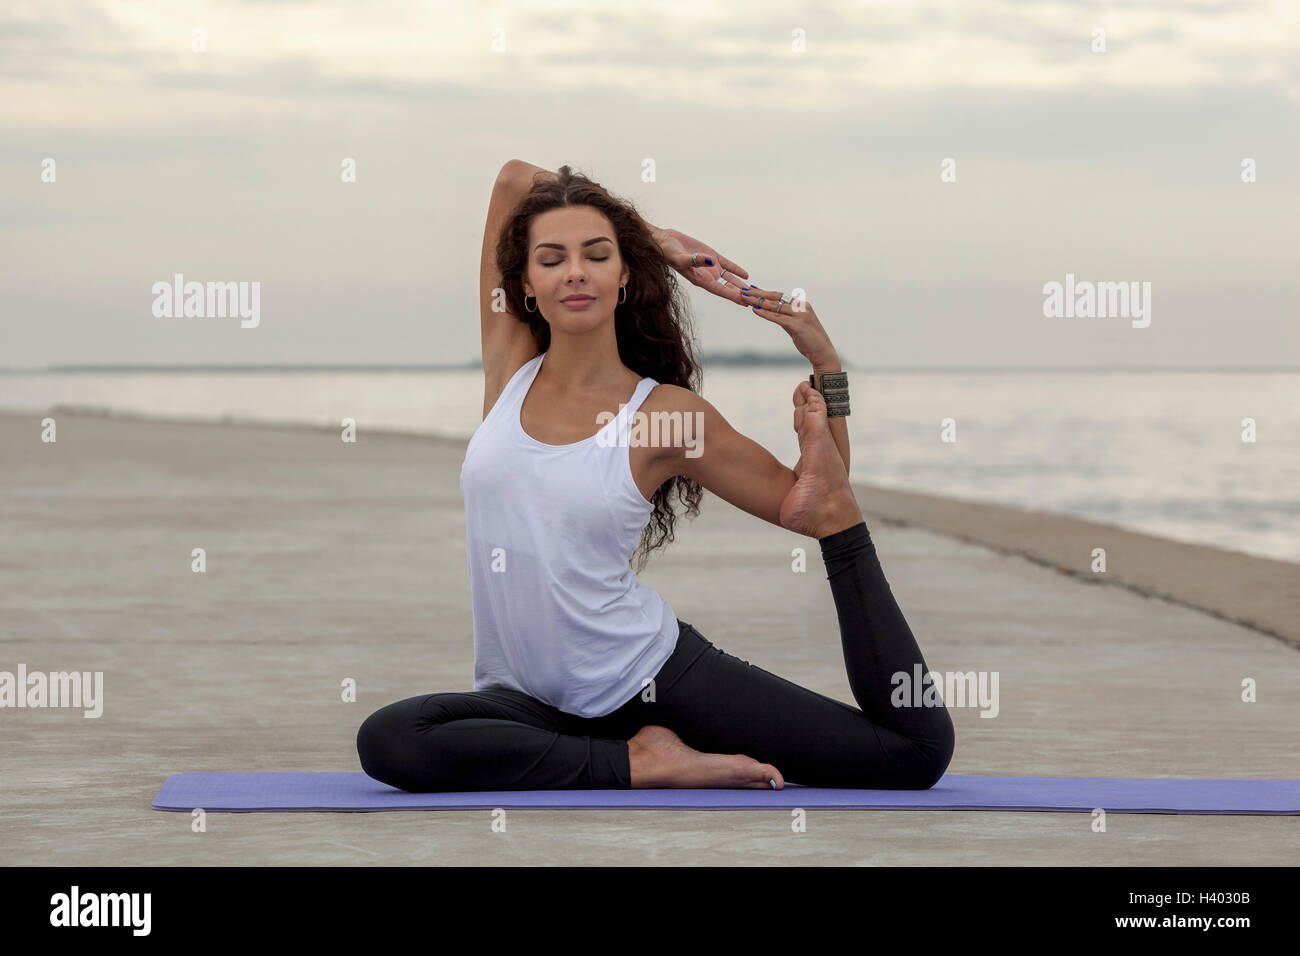 Schöne Frau Yoga zu praktizieren in Meerjungfrau posieren am Strand Stockfoto